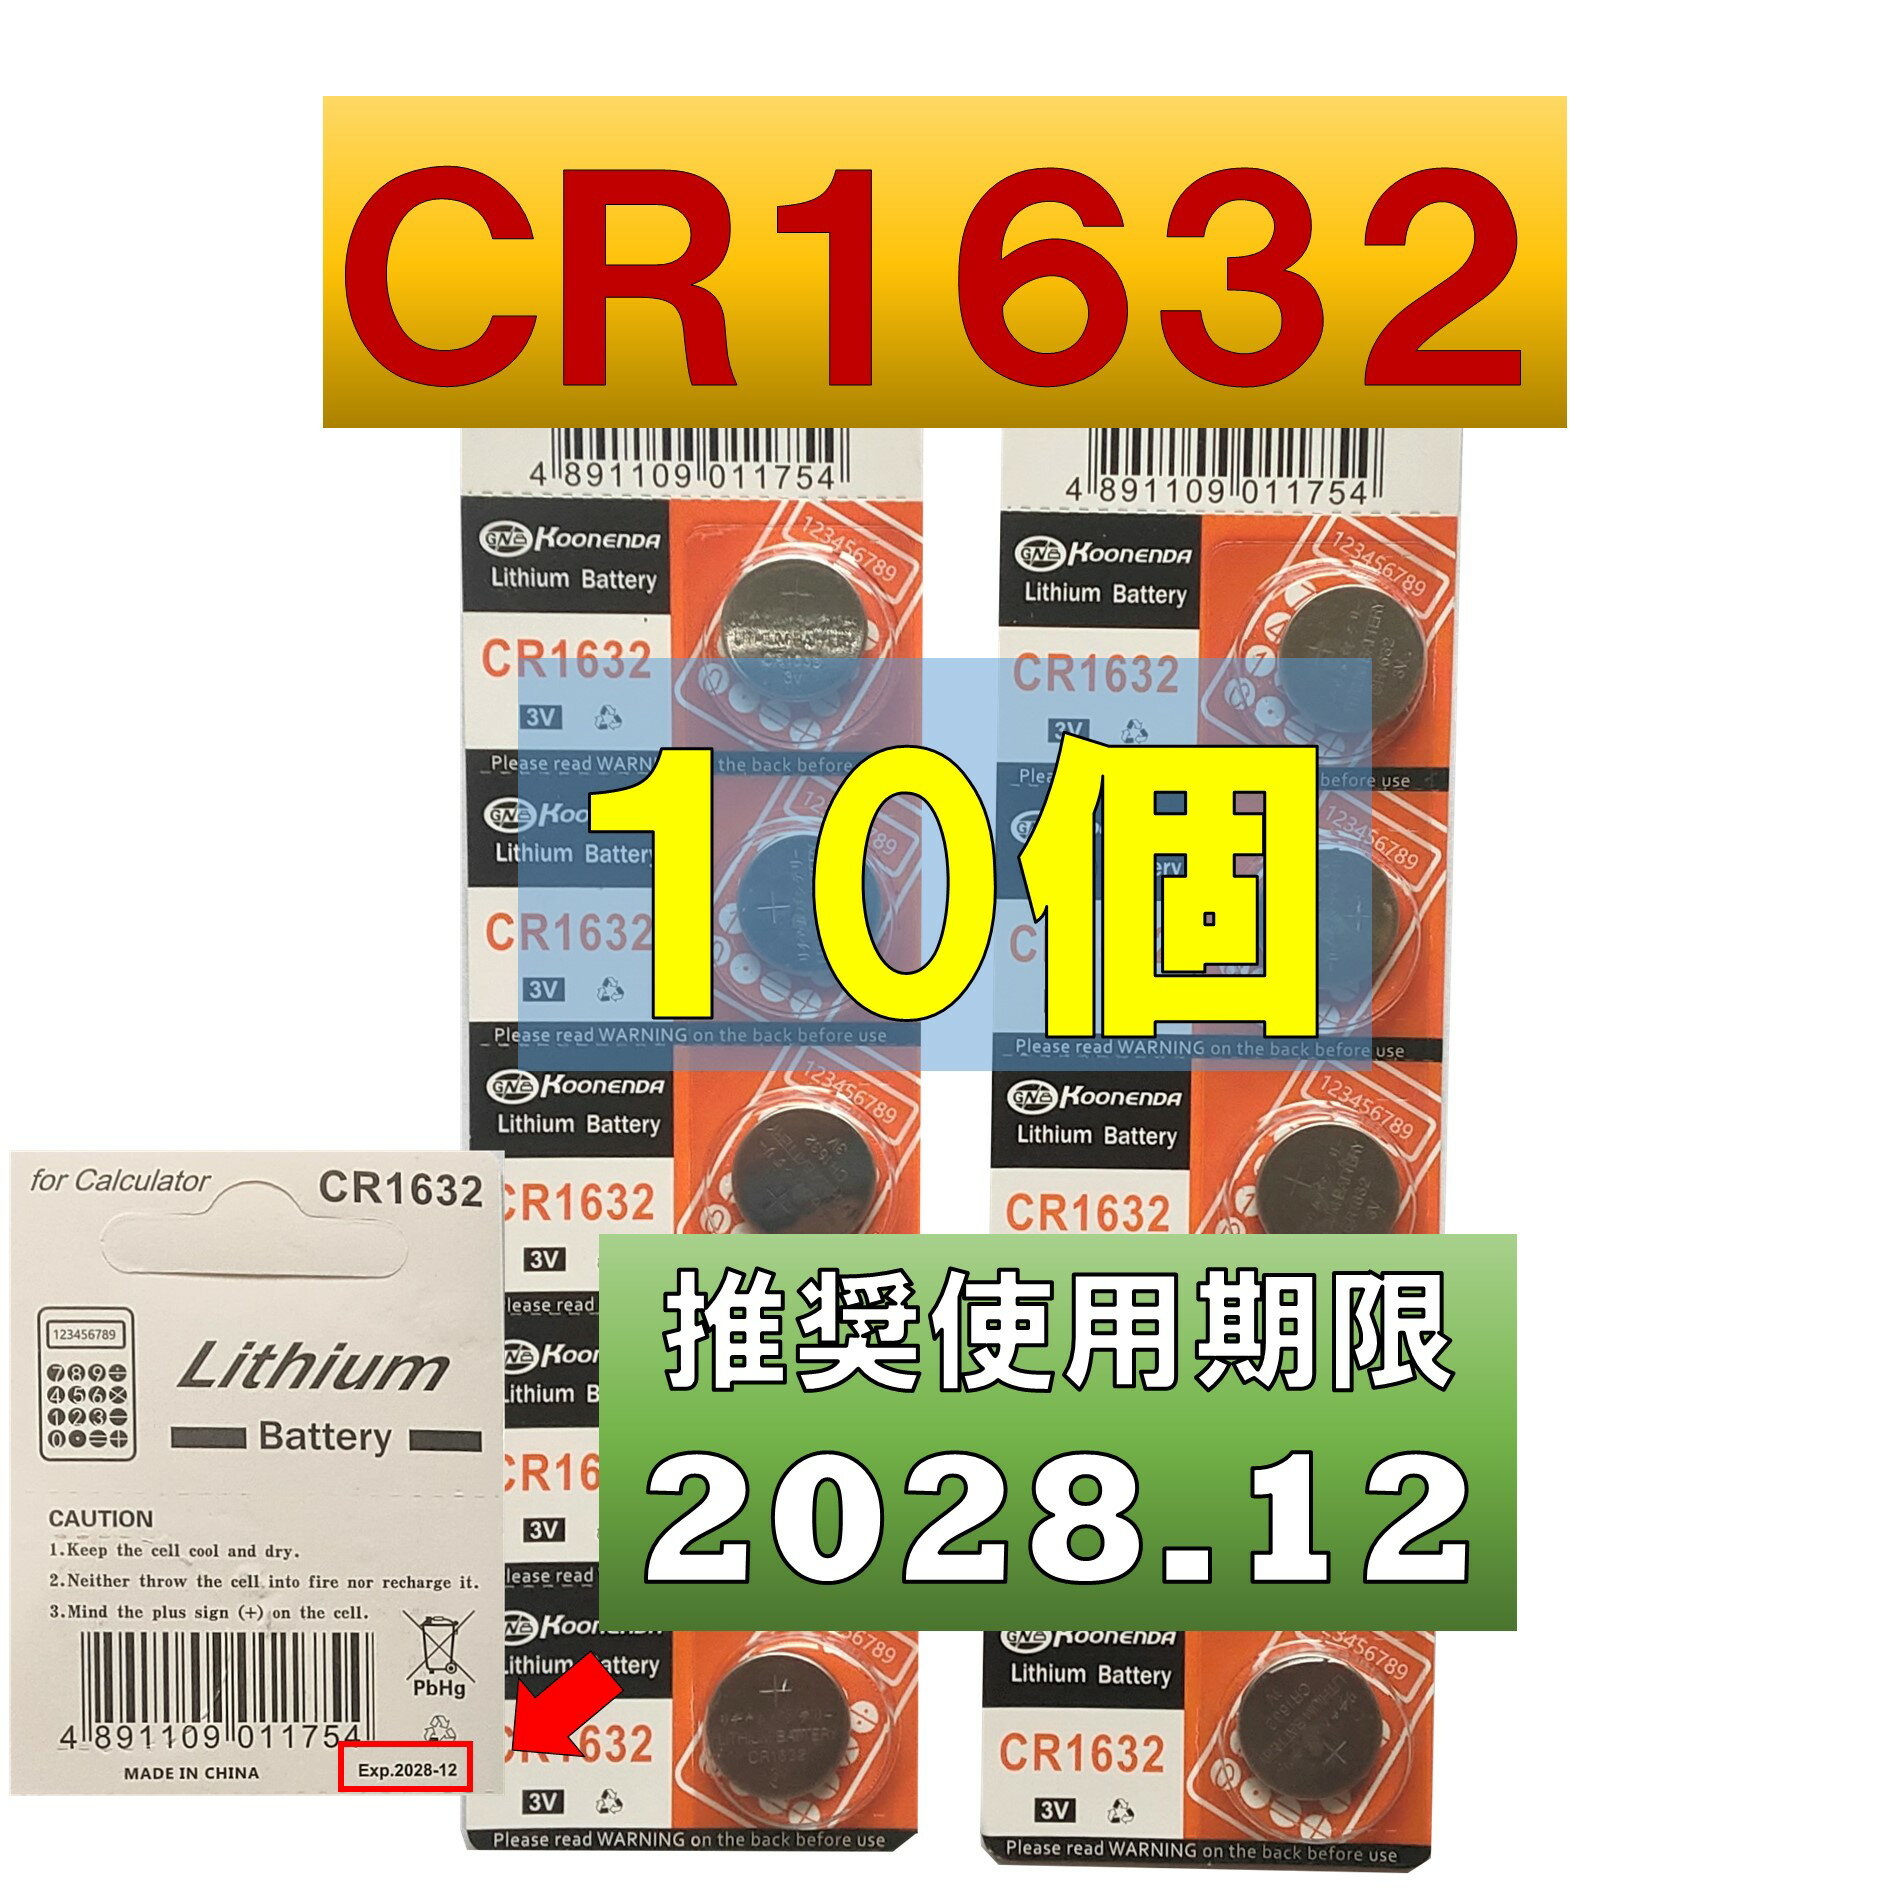 CR1632 `E{^dr 10 gp 2028N12